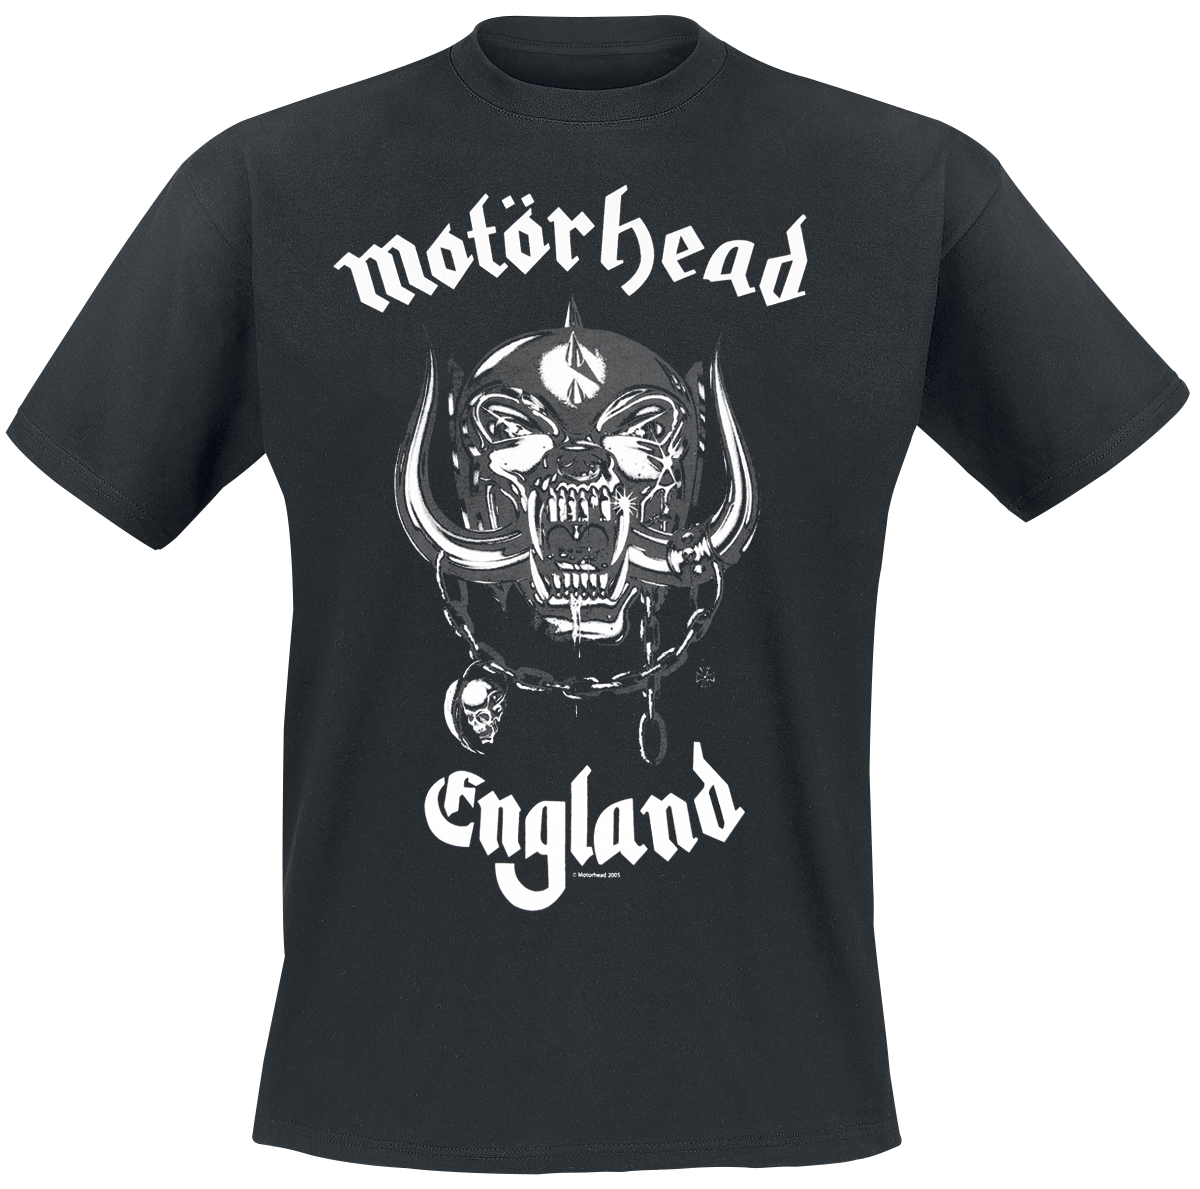 Motörhead - England - T-Shirt - schwarz